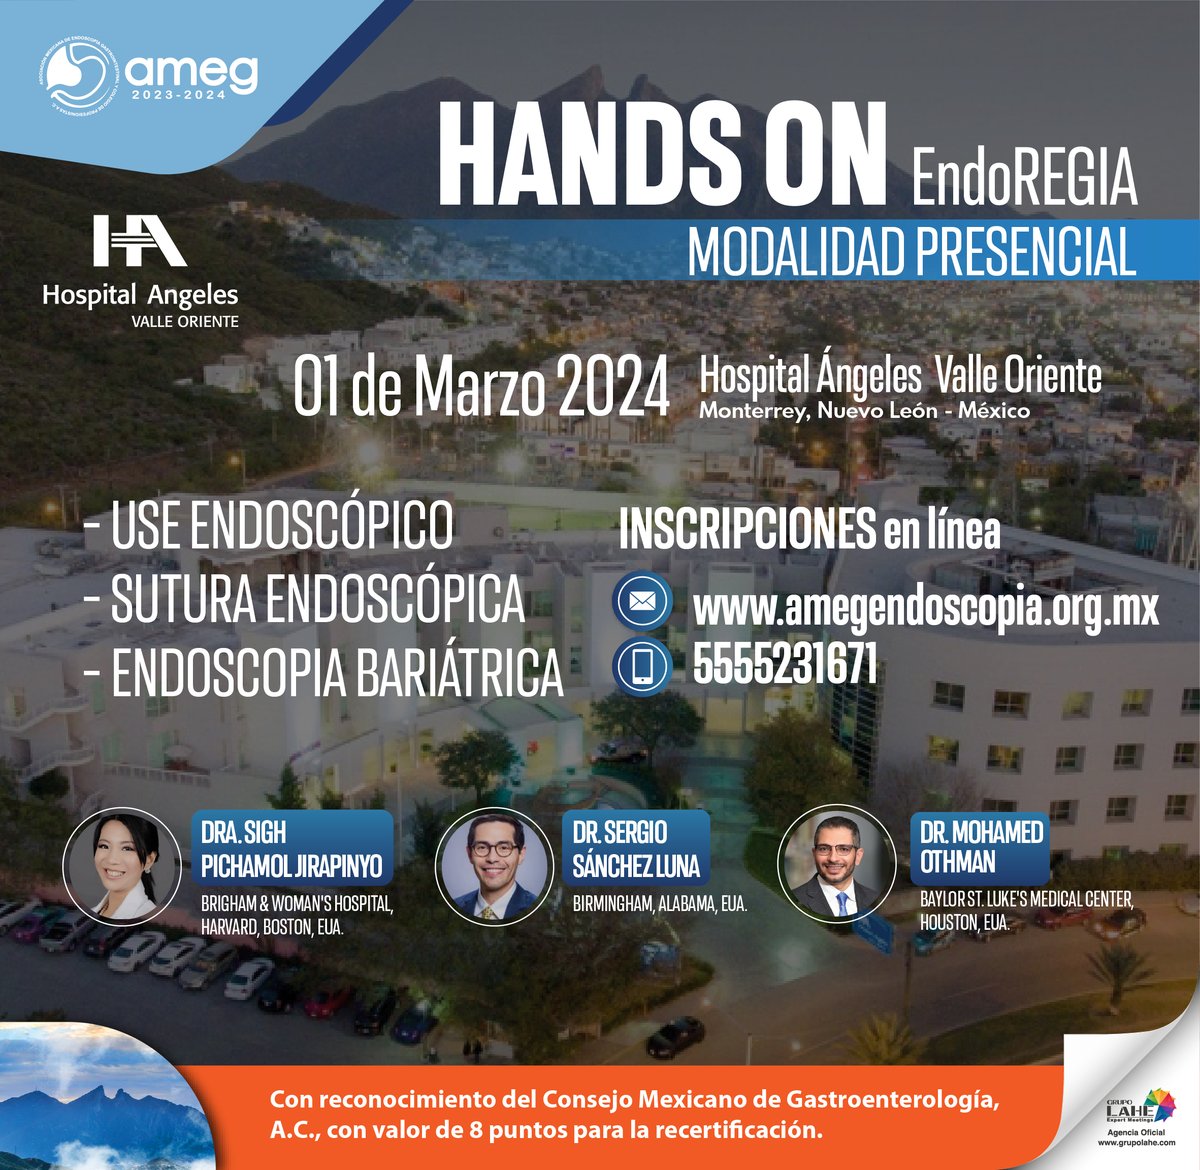 ¡Estamos emocionados de anunciar nuestro próximo curso presencial 'Hands On EndoREGIA'! 🙌. Únete a nosotros! La sede será el Hospital Ángeles Valle Oriente. No te lo pierdas! 🏥 ¡Regístrate ahora!#EndoREGIA #EndoscopiaGastrointestinal #AprendizajePráctico #Monterrey #HandsOn